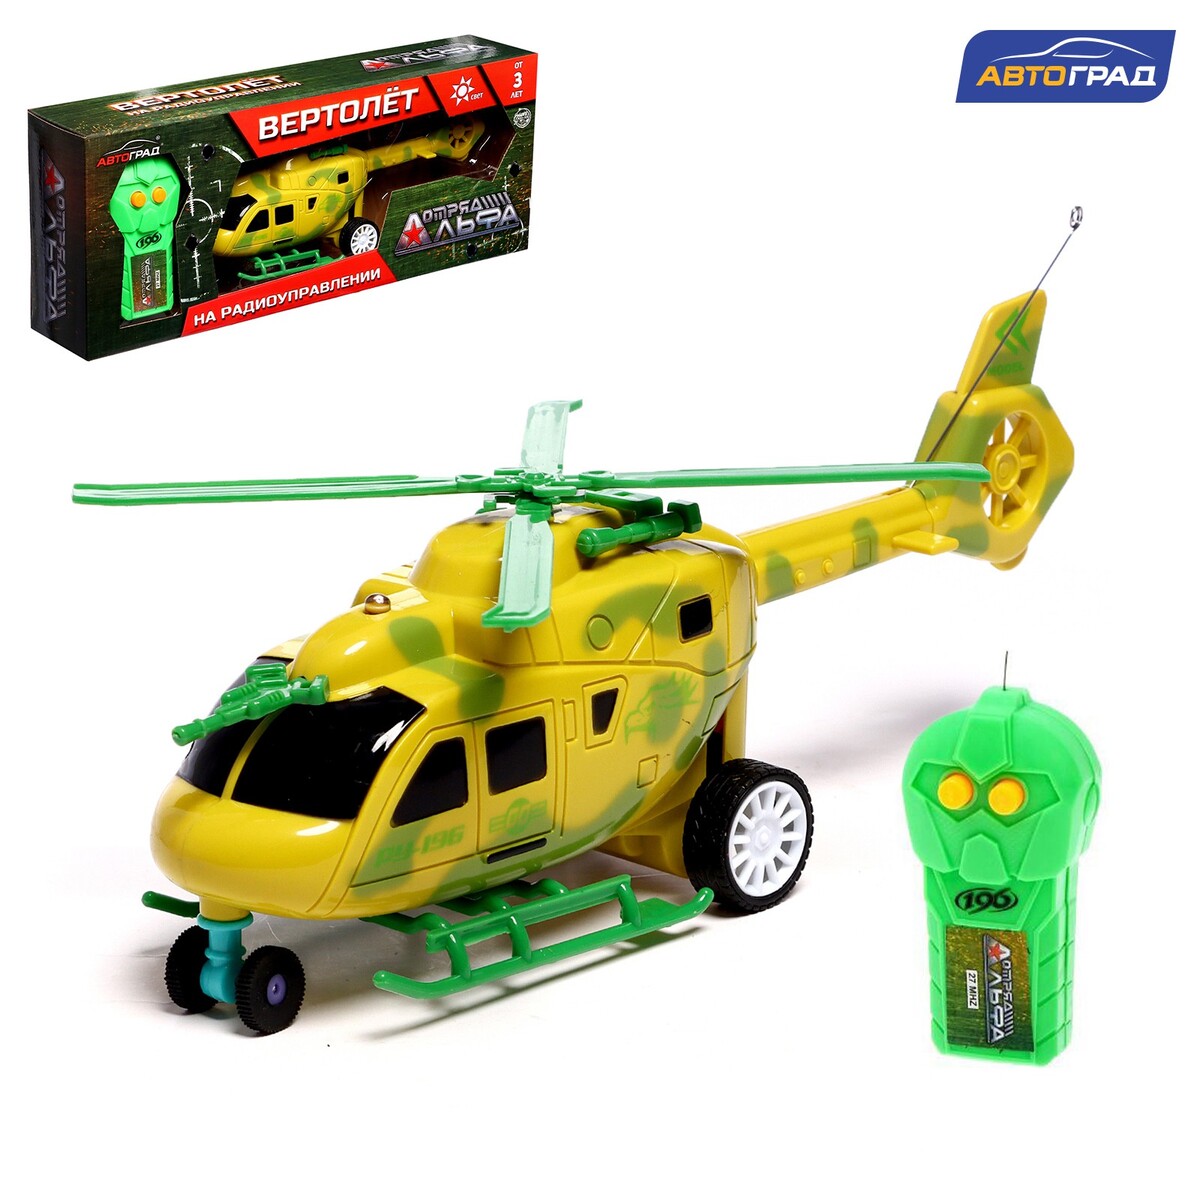 Вертолет радиоуправляемый радиоуправляемый вертолет sky dancer 2 4g wl toys v912 a